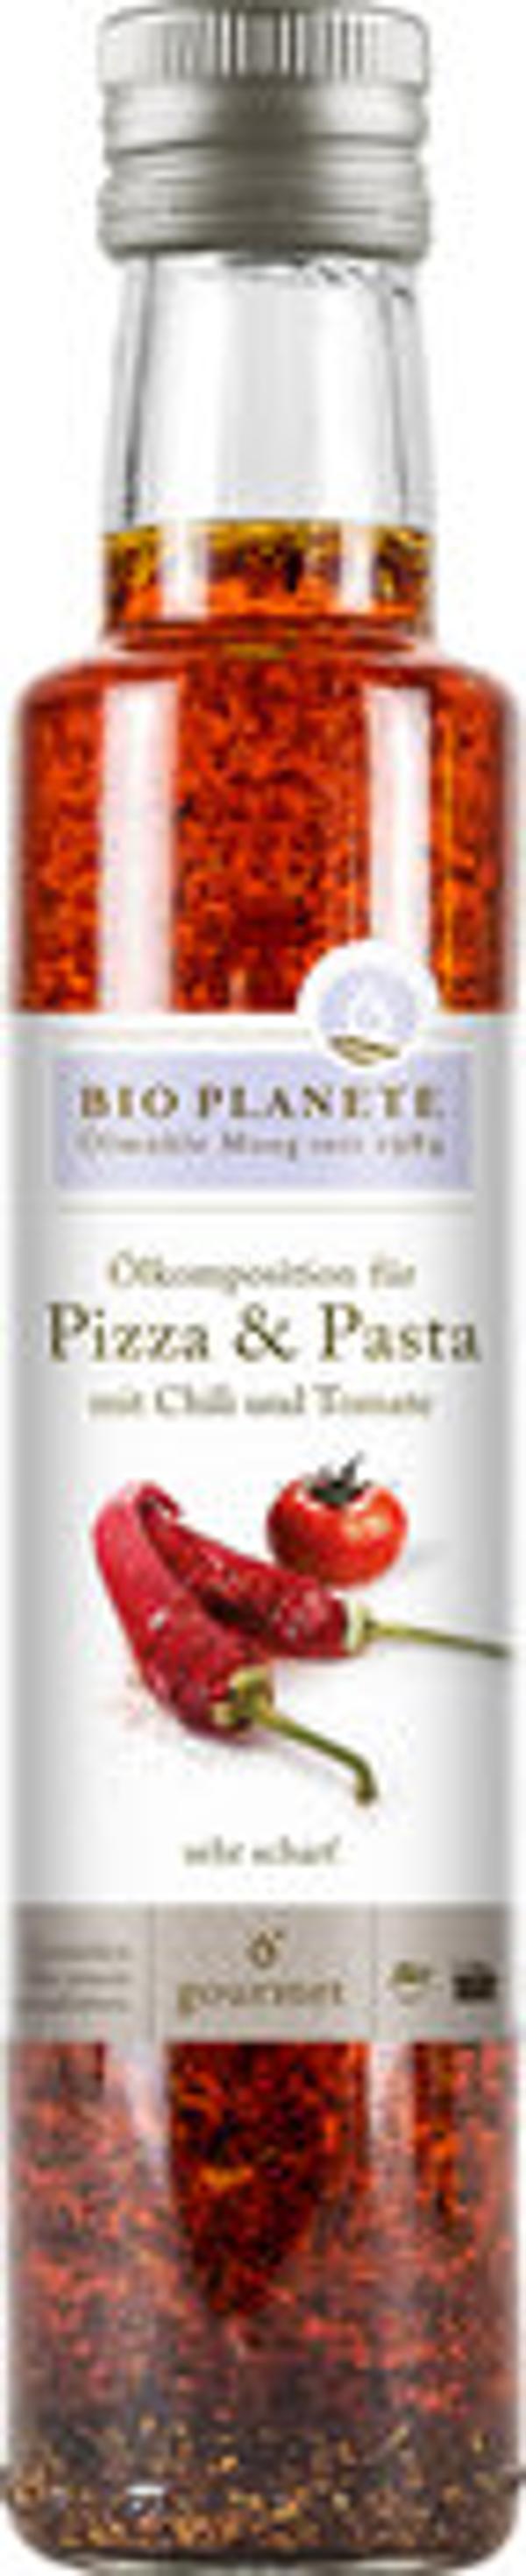 Produktfoto zu Ölkomposition für Pizza & Pasta 250 ml